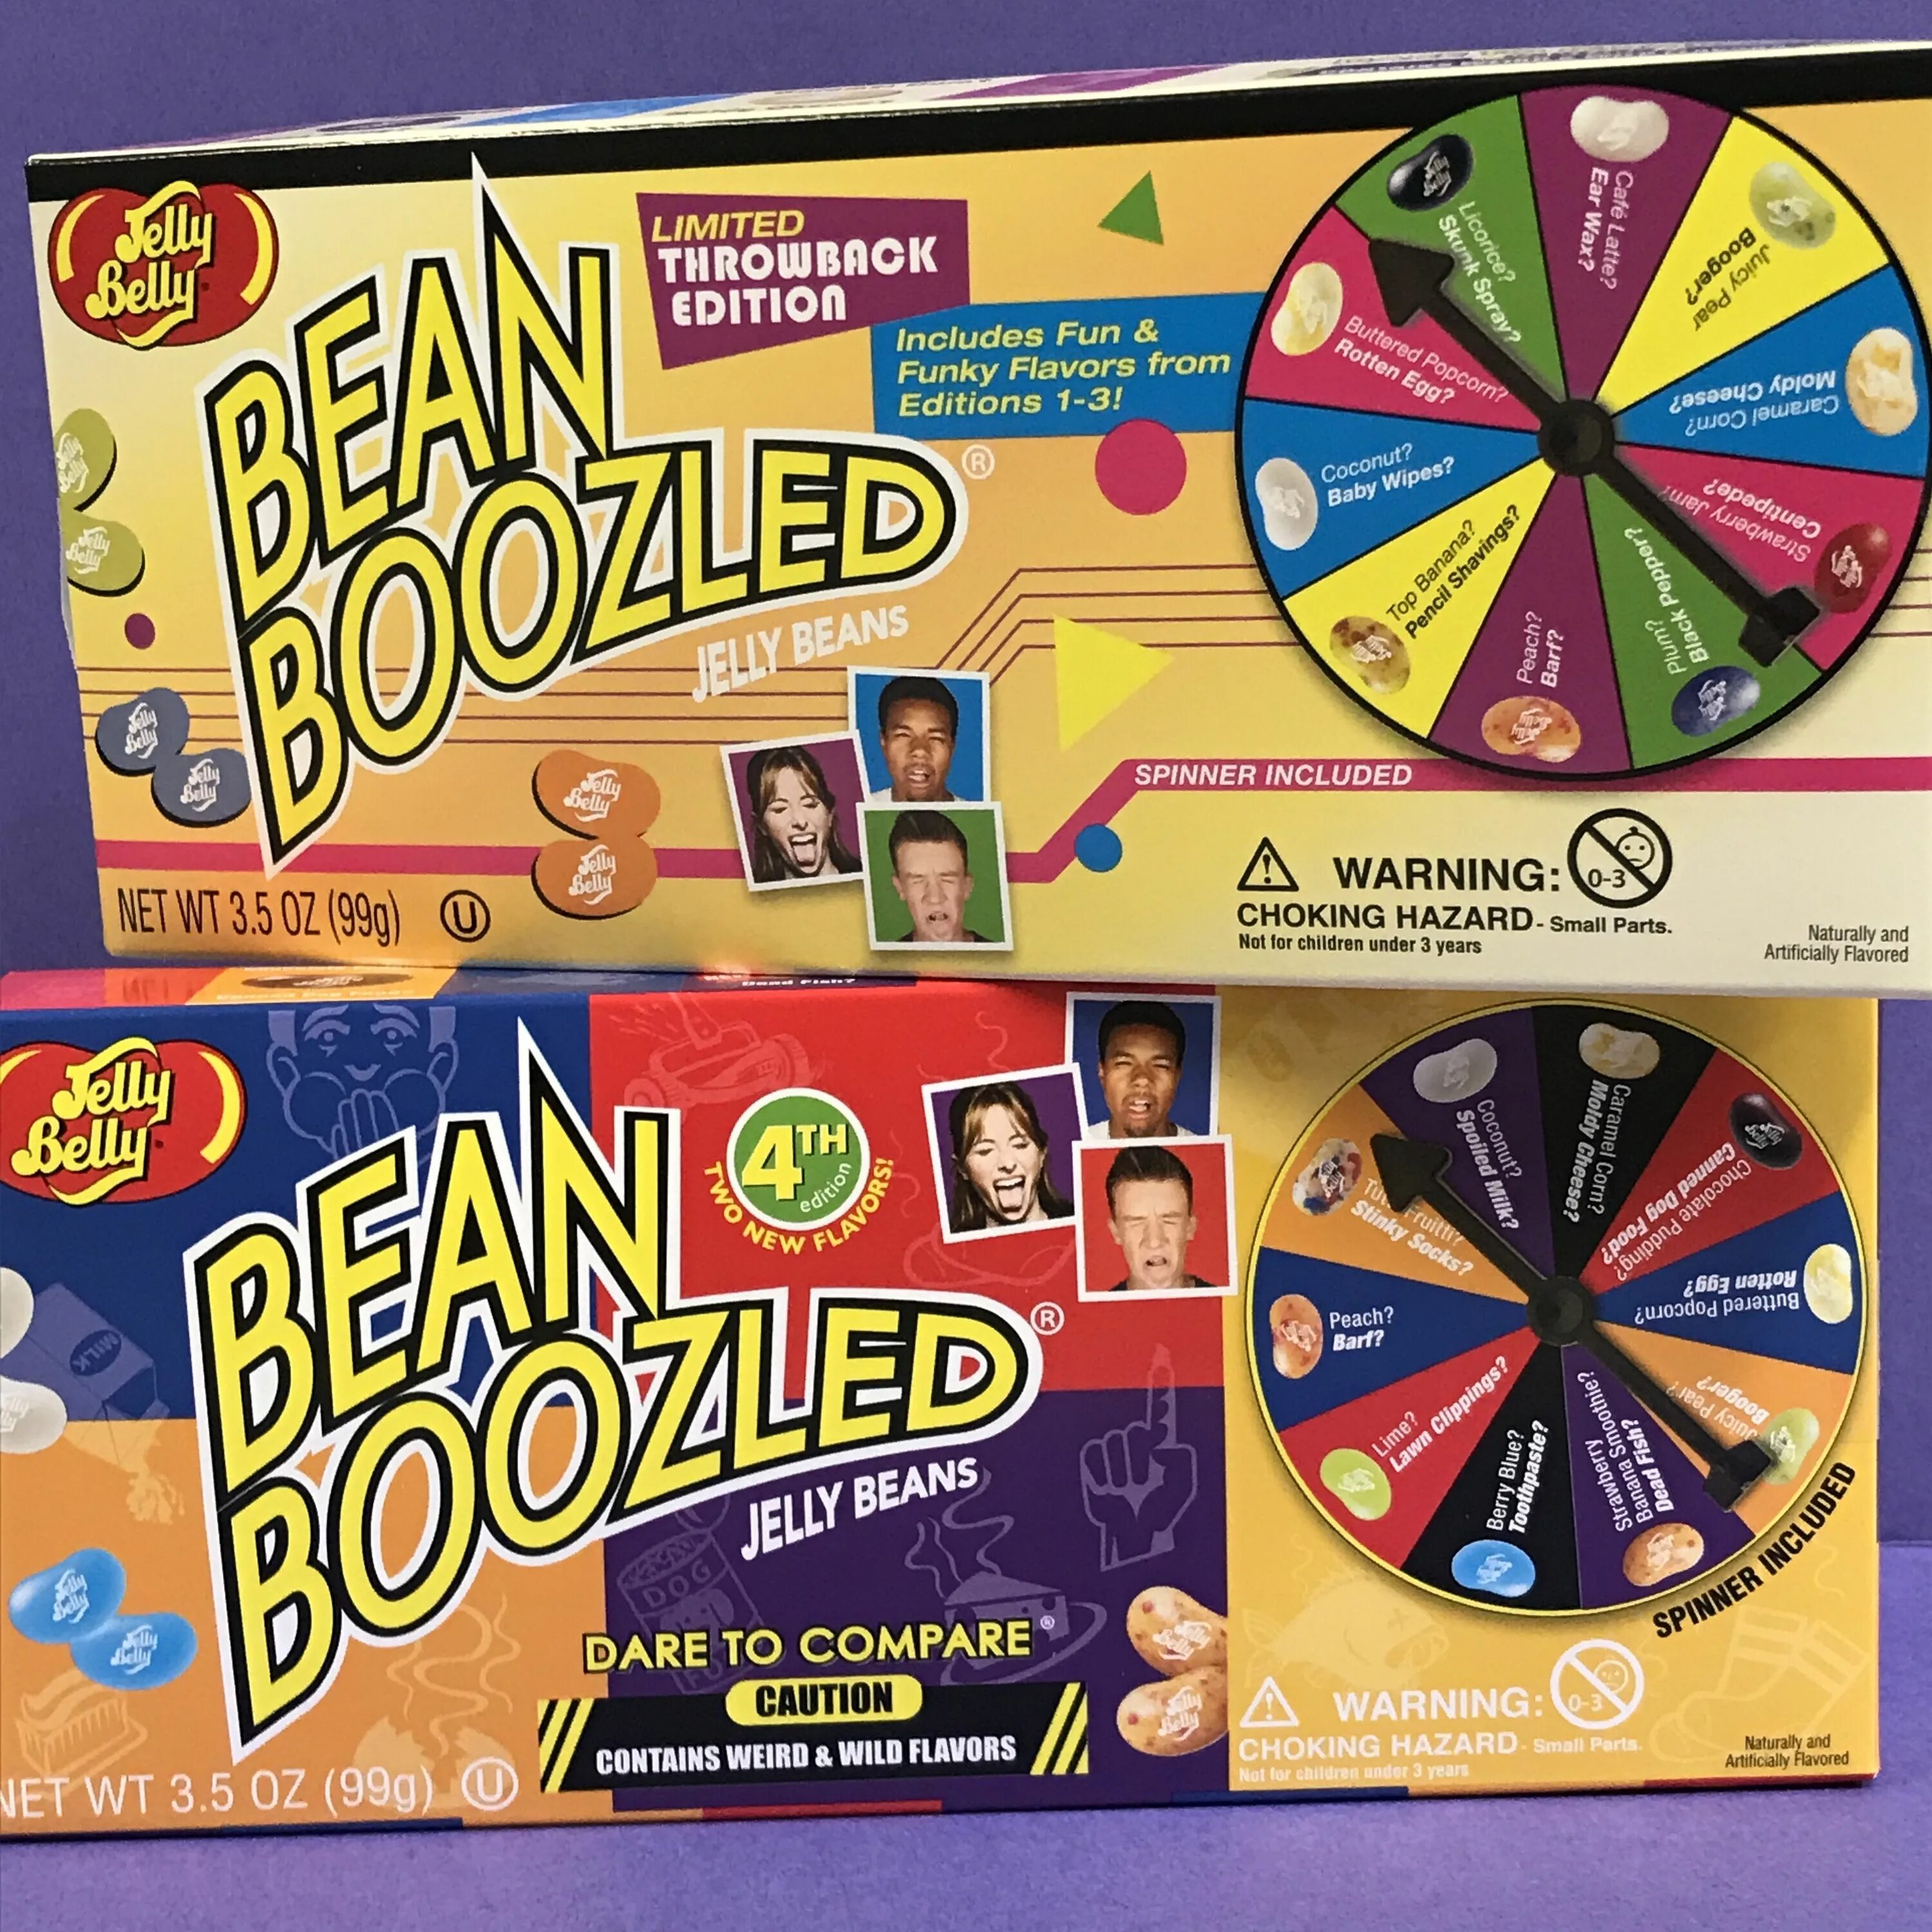 Bean boozled вкусы. Jelly belly Bean Boozled вкусы. Игра Bean Boozled. Bean Boozled 1th. Bean Boozled 6th Edition вкусы.